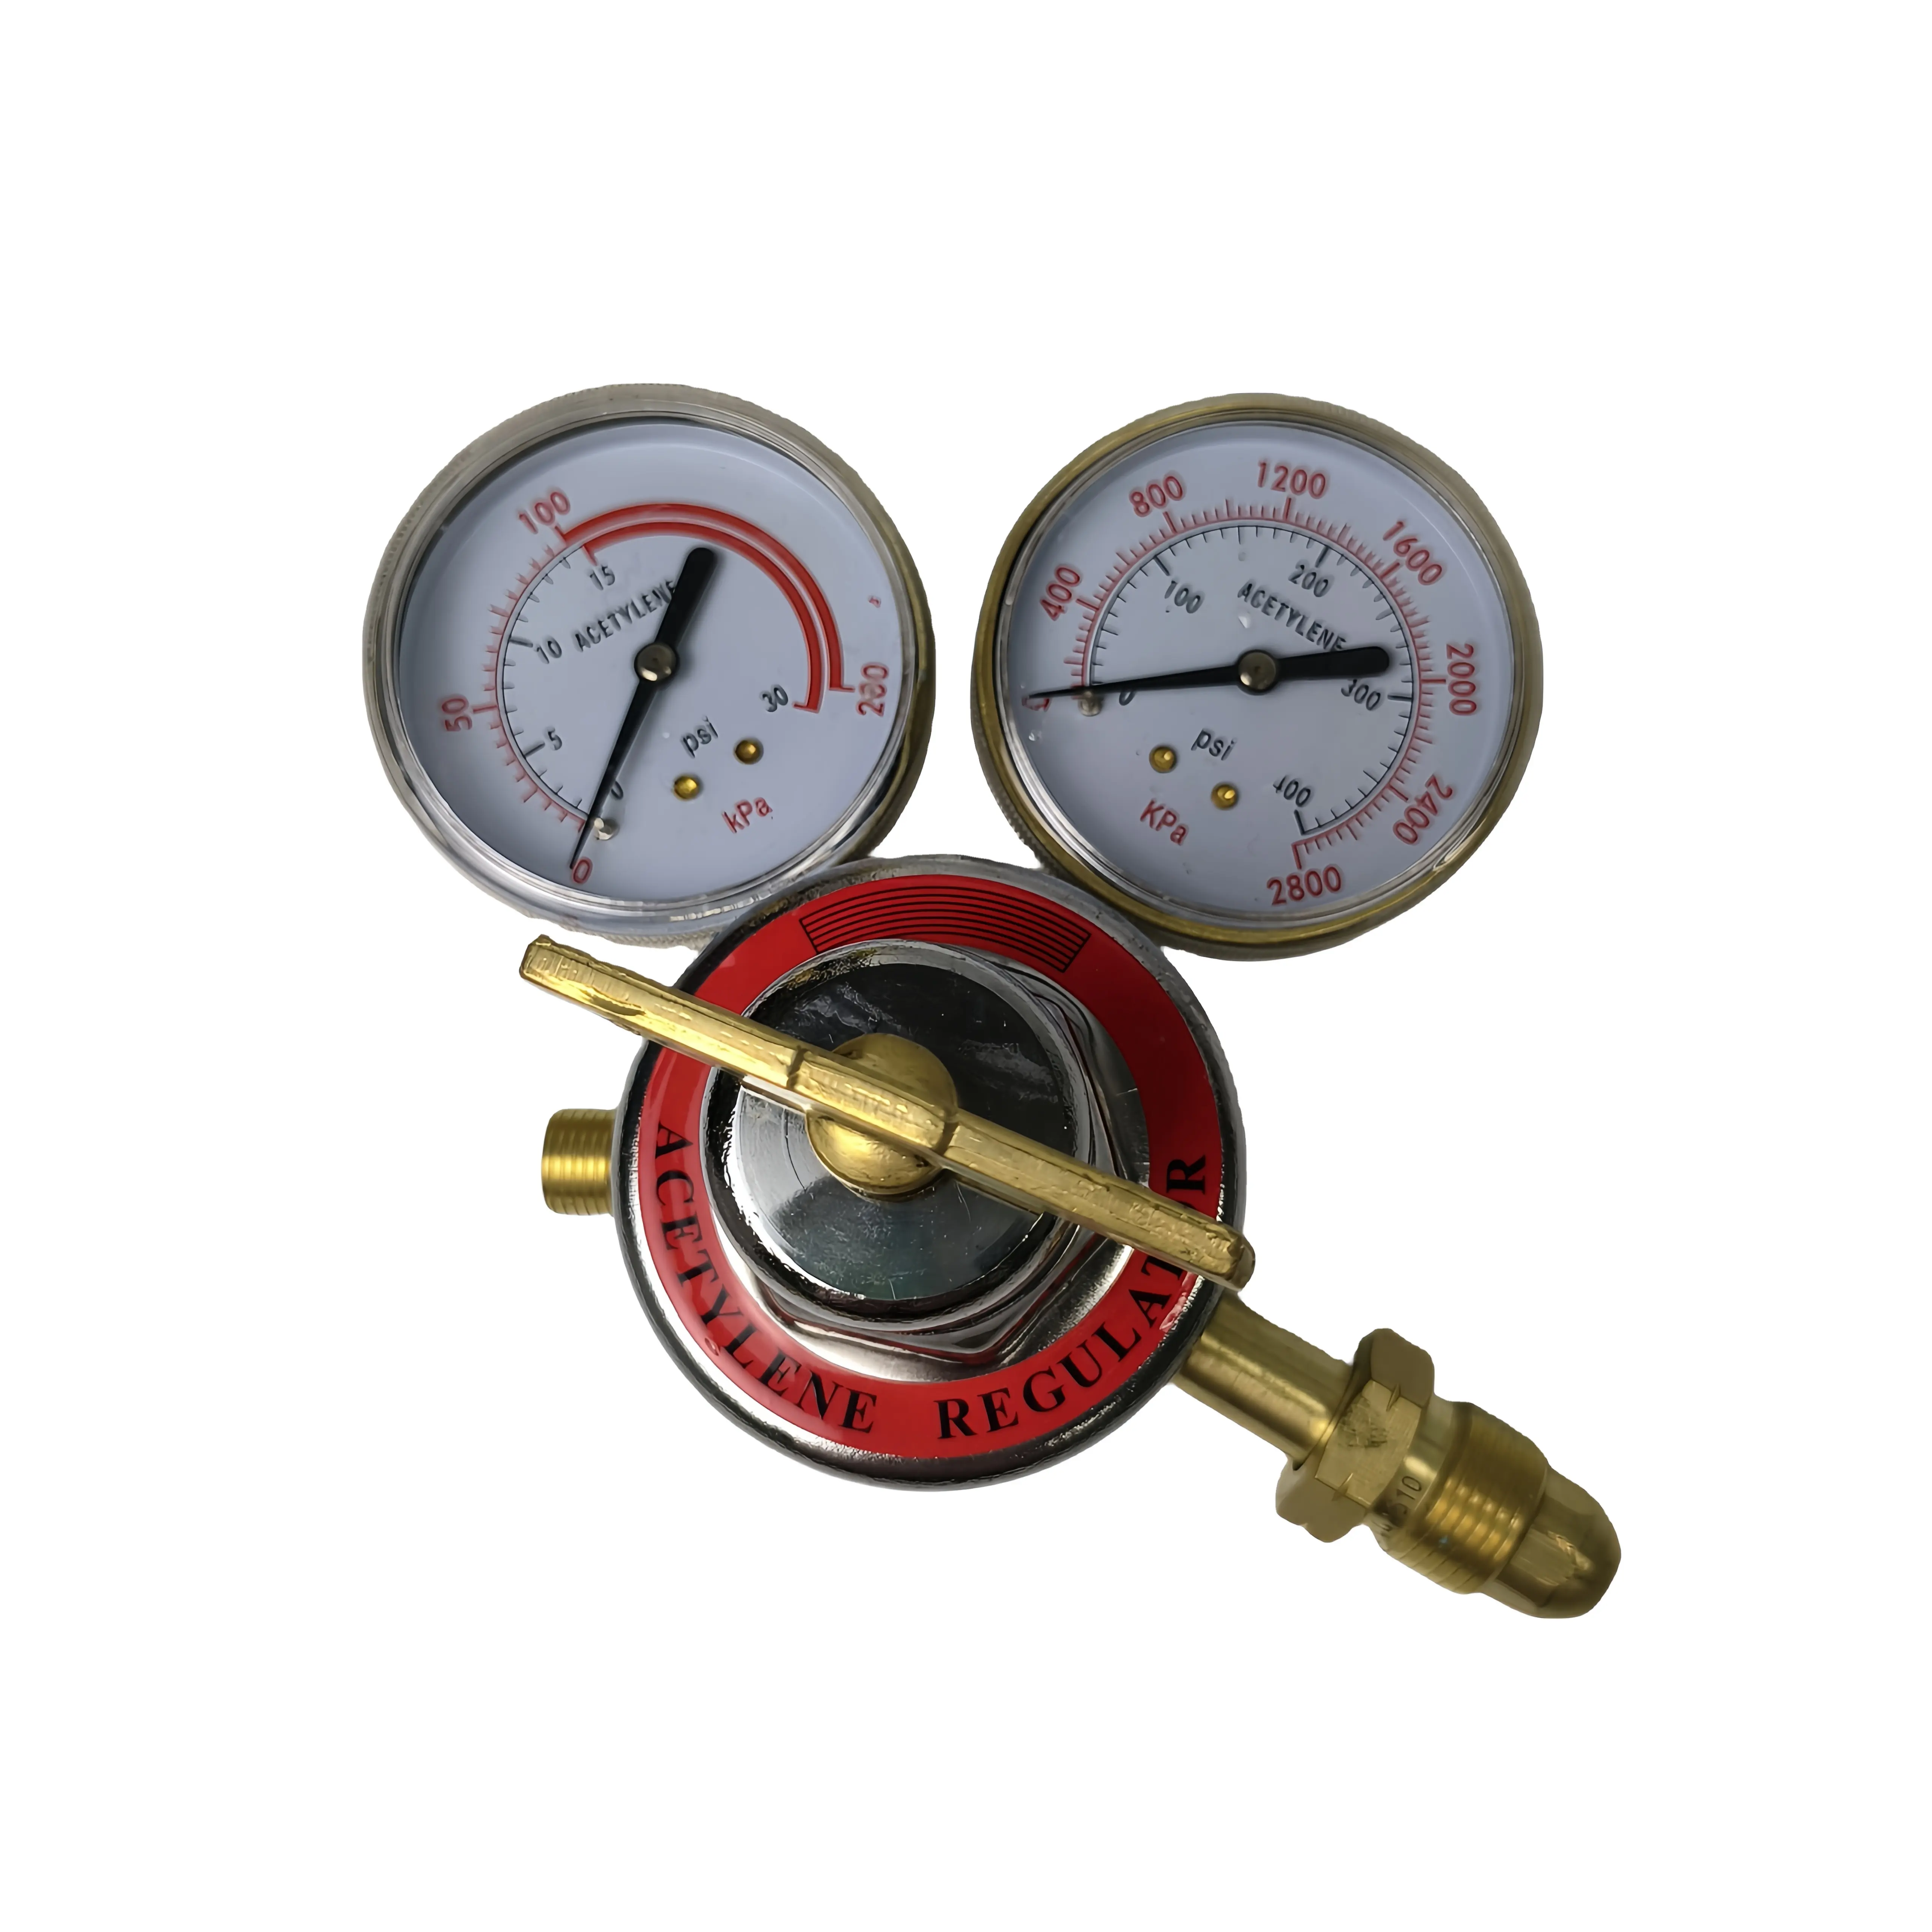 Regulador de gás acetileno de latão de alta qualidade regulador de alta pressão para soldagem e corte